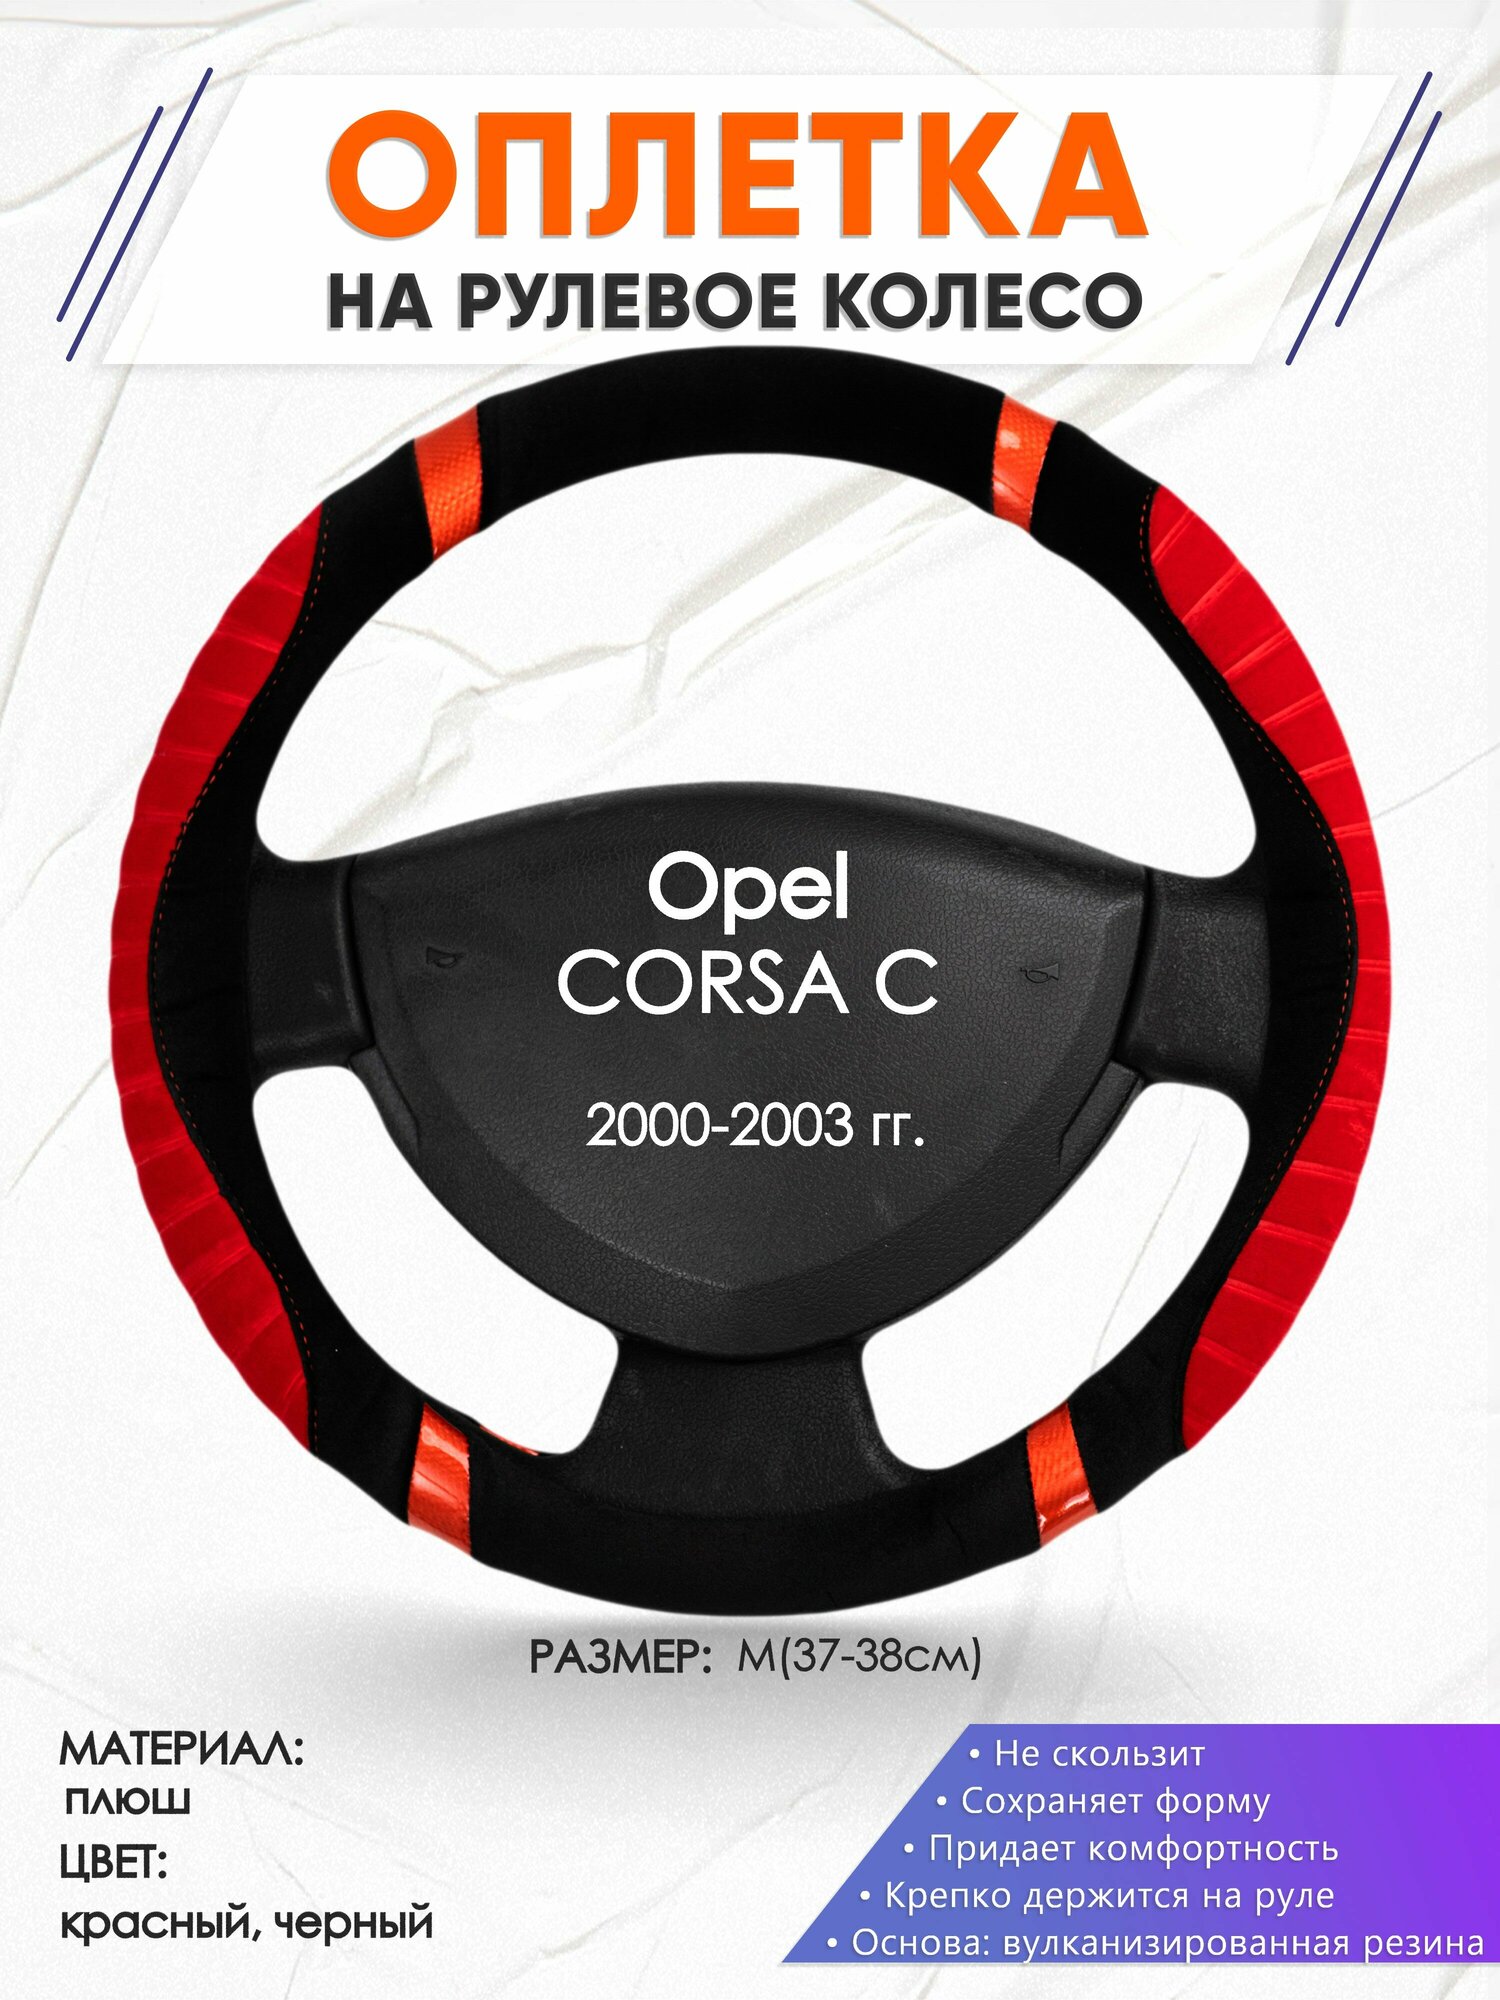 Оплетка наруль для Opel CORSA C(Опель Корса) 2000-2003 годов выпуска размер M(37-38см) Замша 36